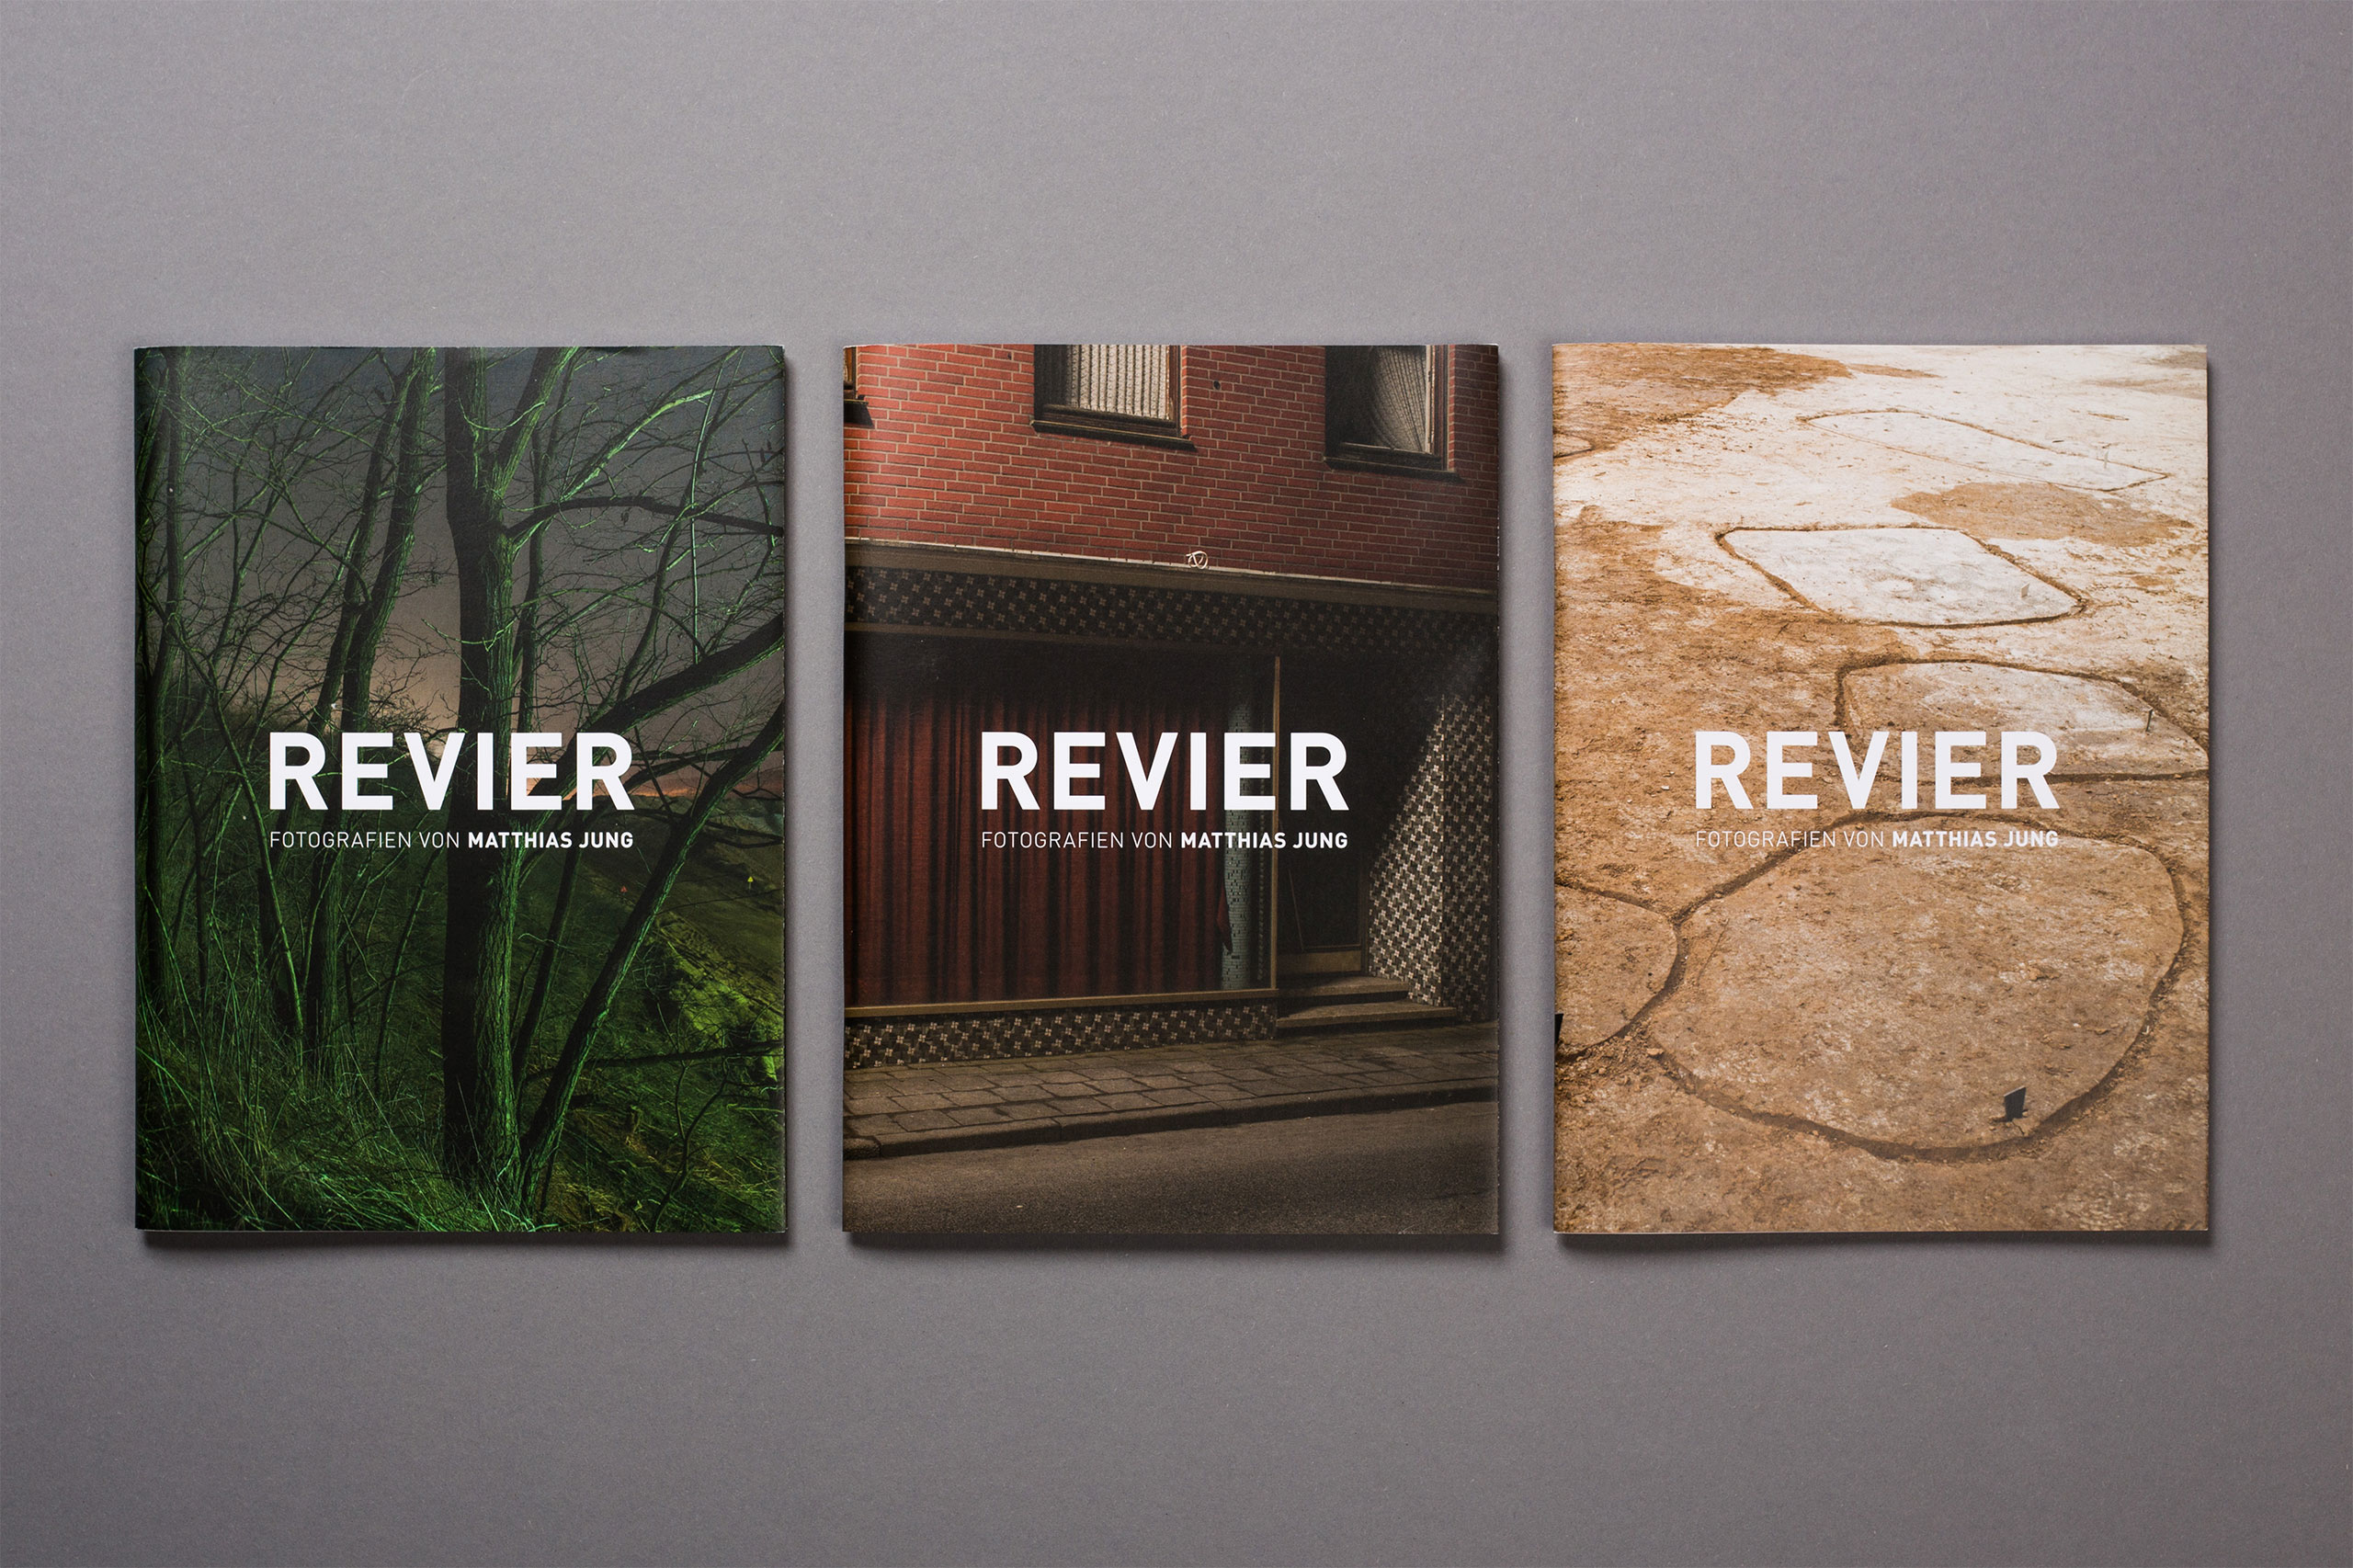 Revier Fotoband, drei Cover